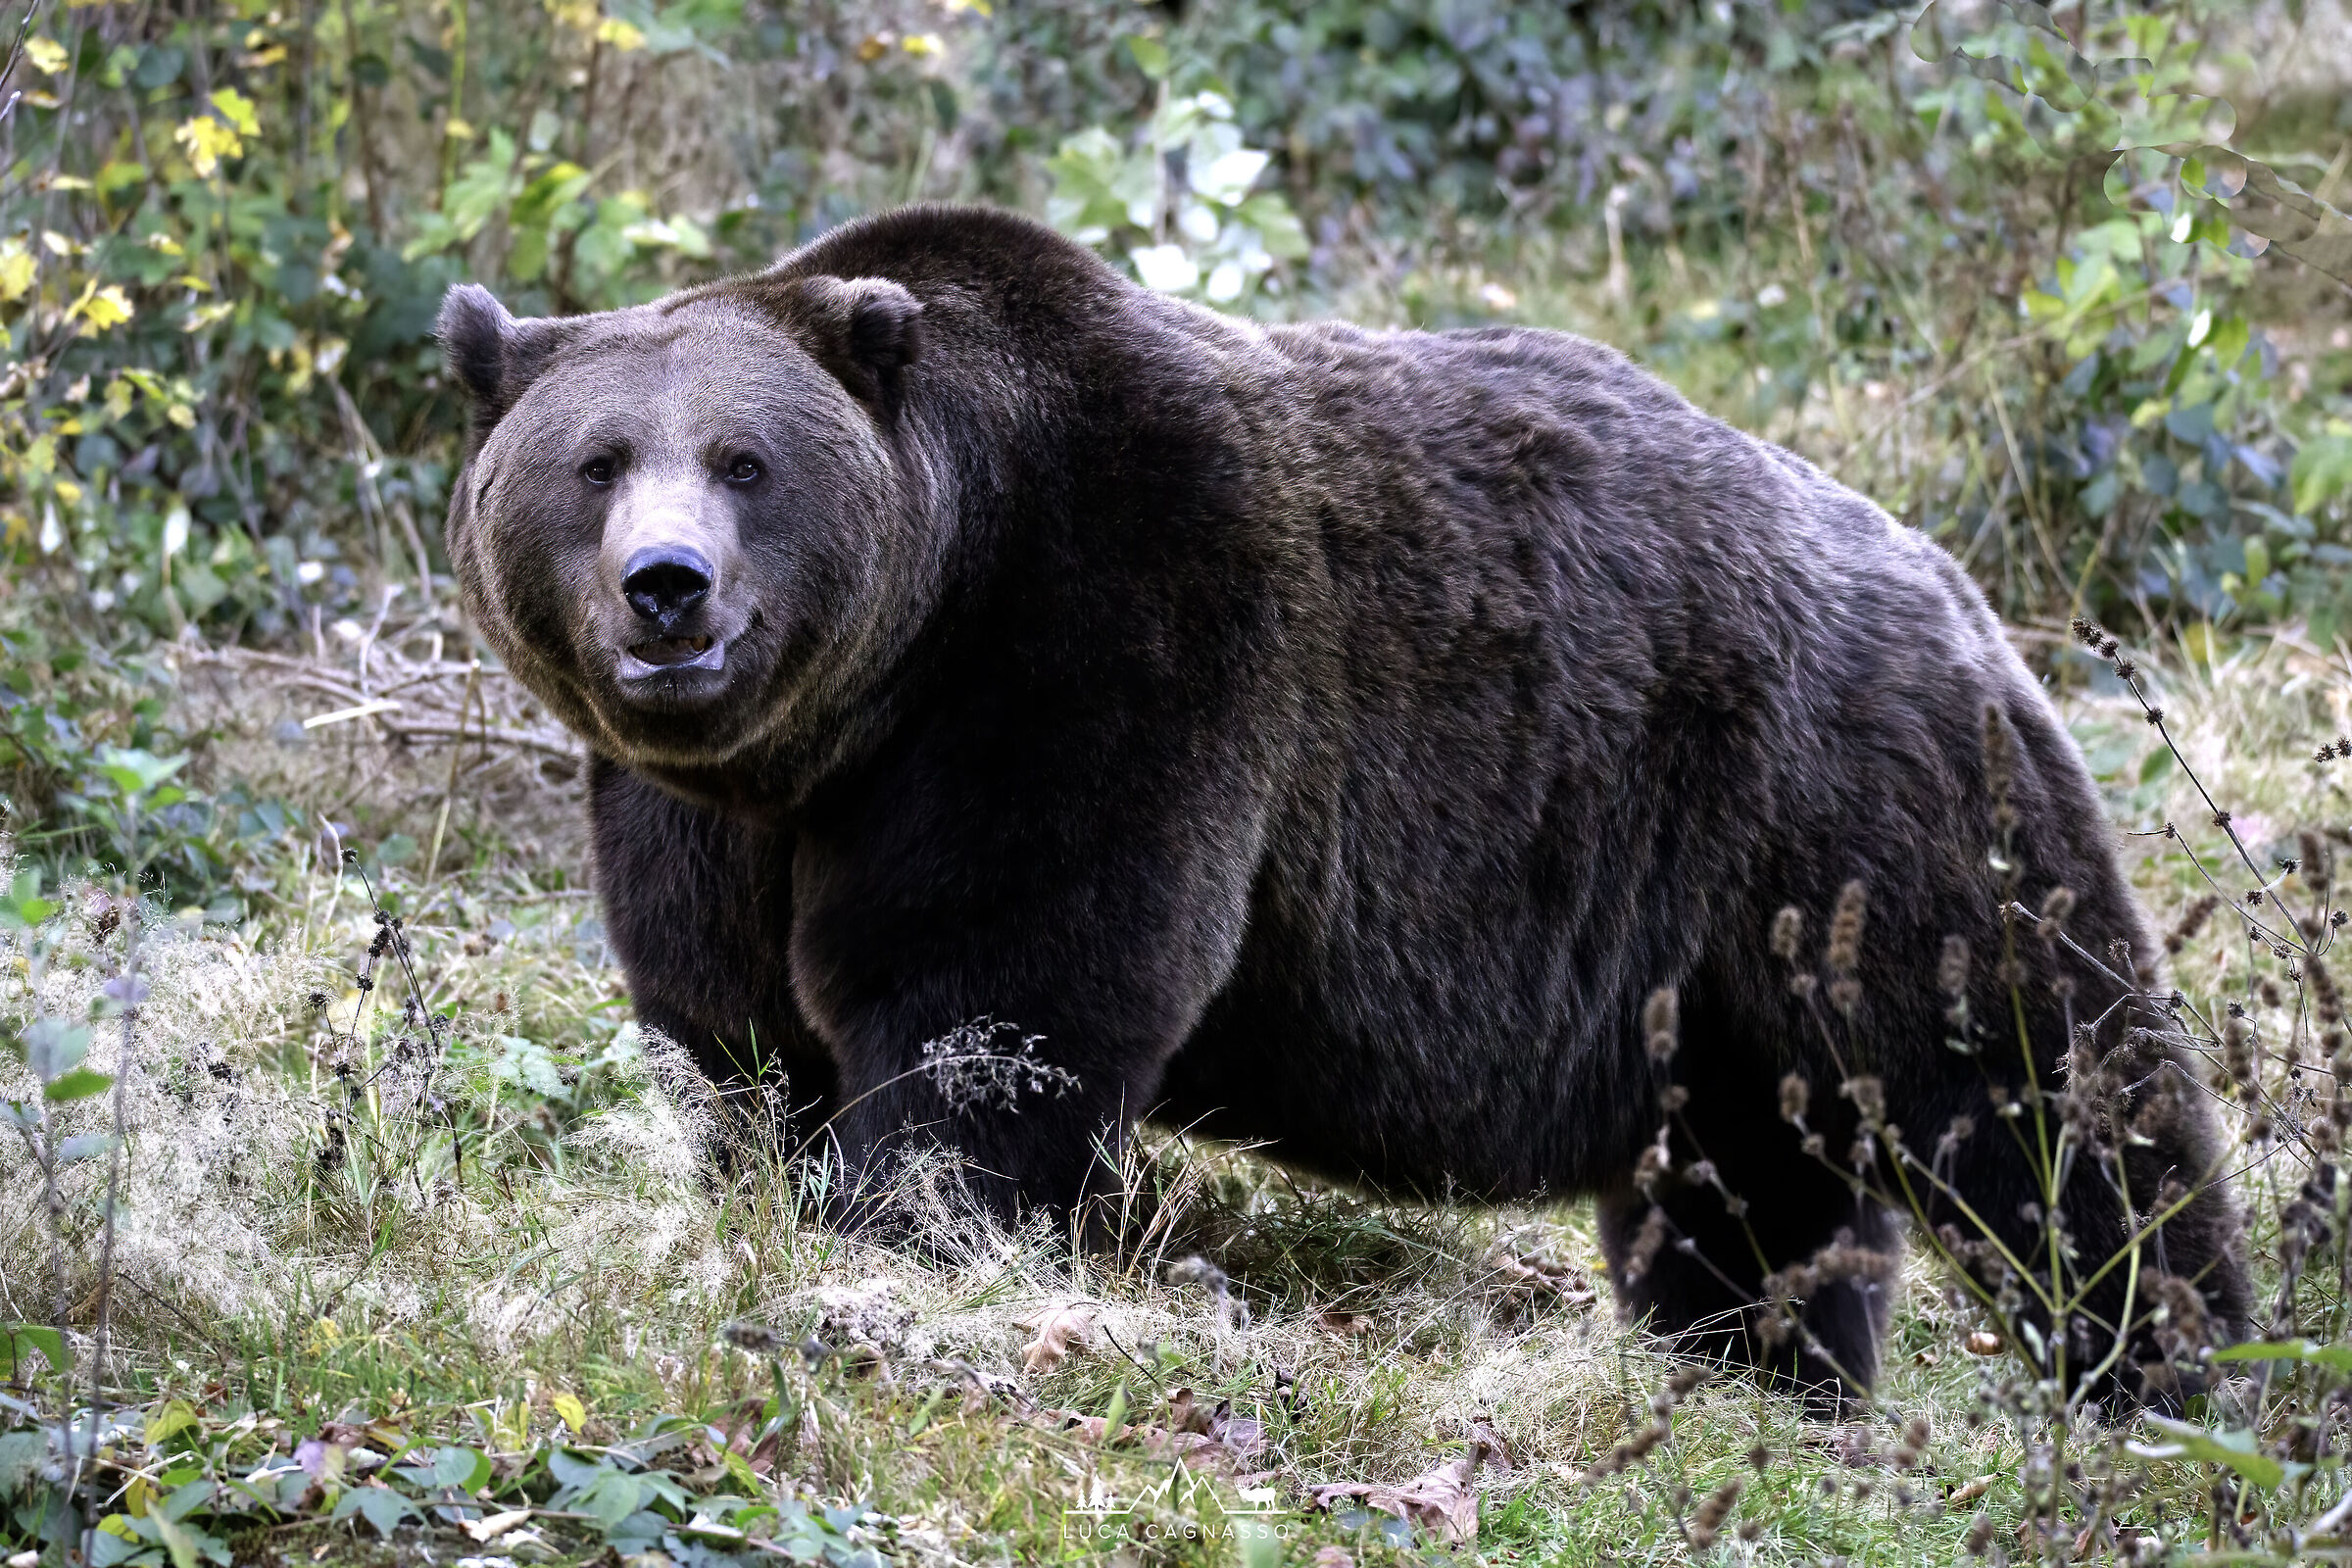 Brown bear 2 - Ursus arctos...